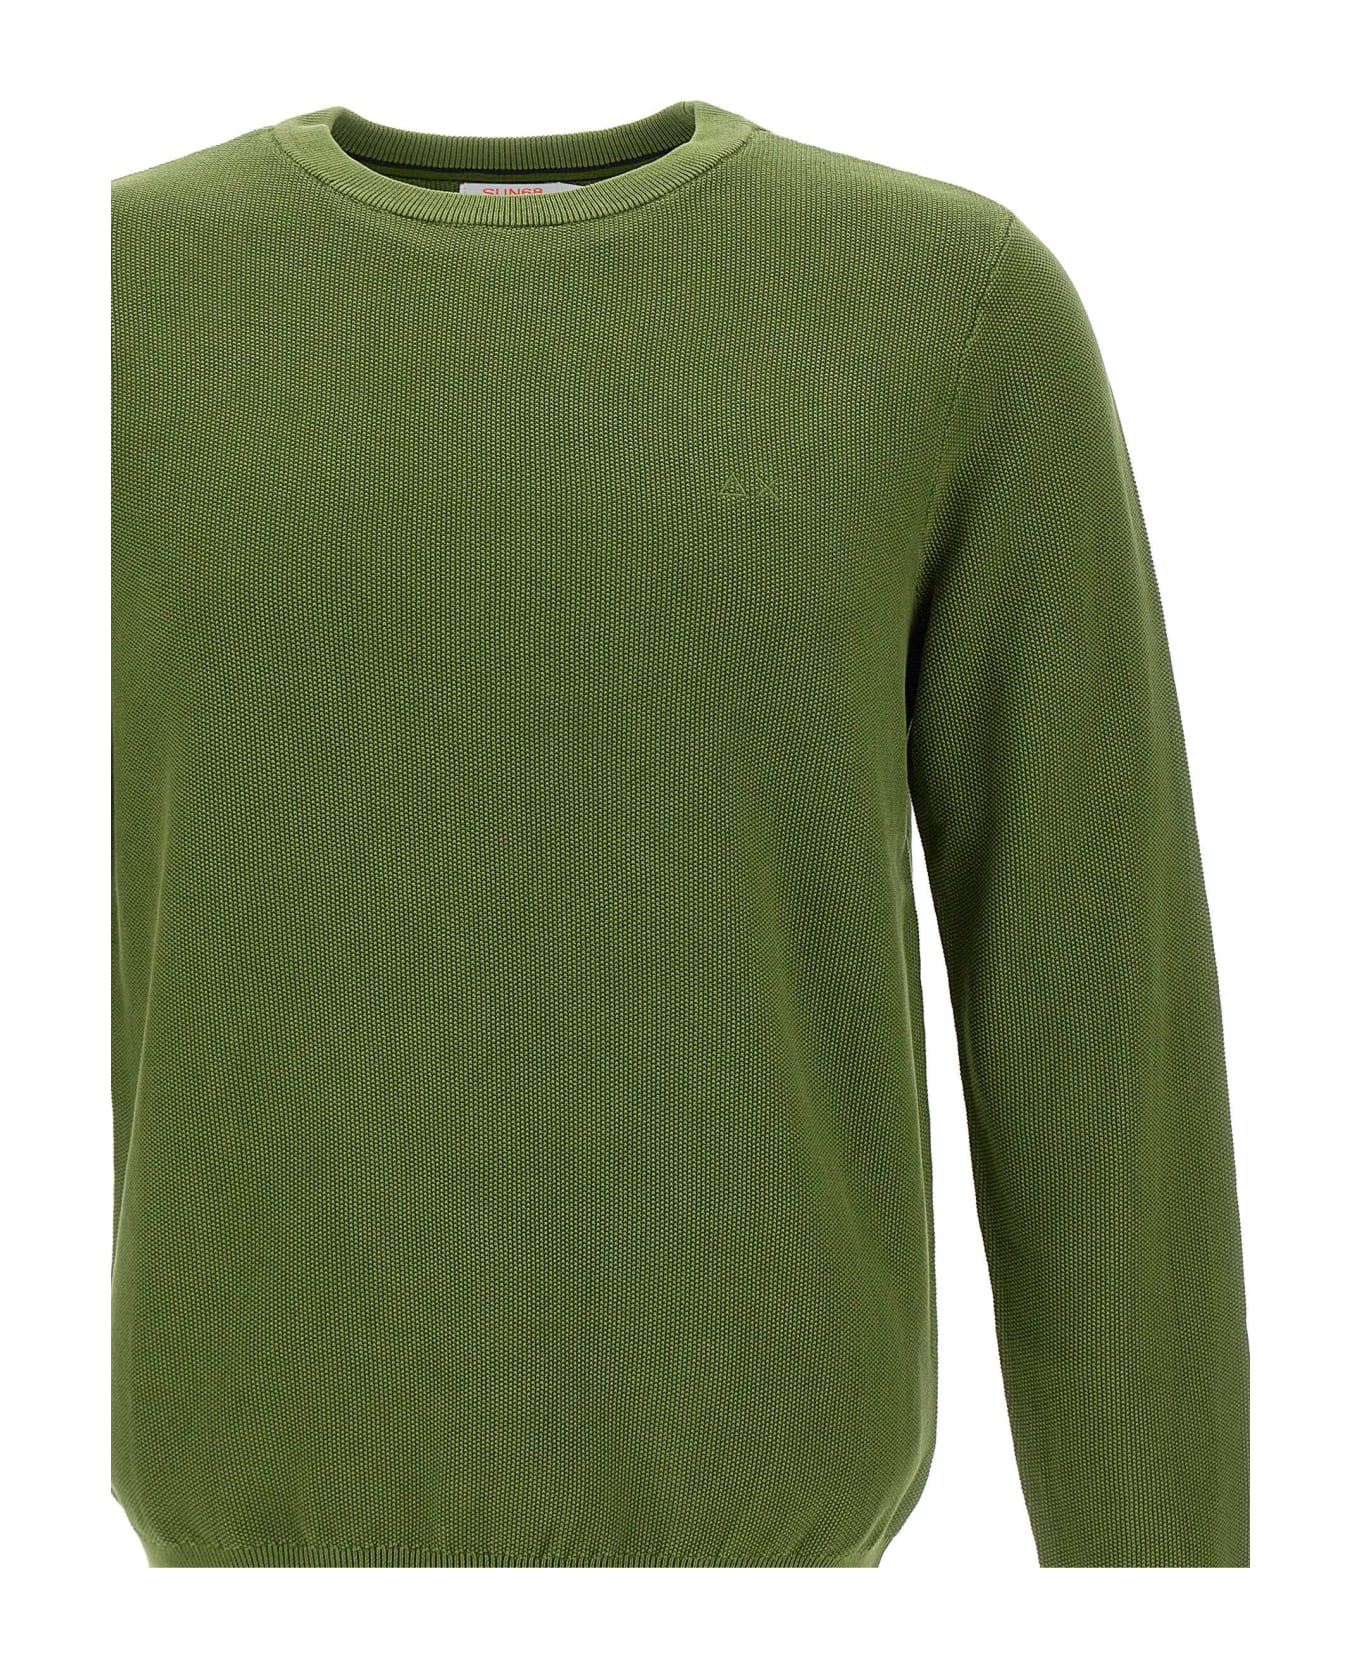 Sun 68 'round Vintage' Sweater Cotton - Green